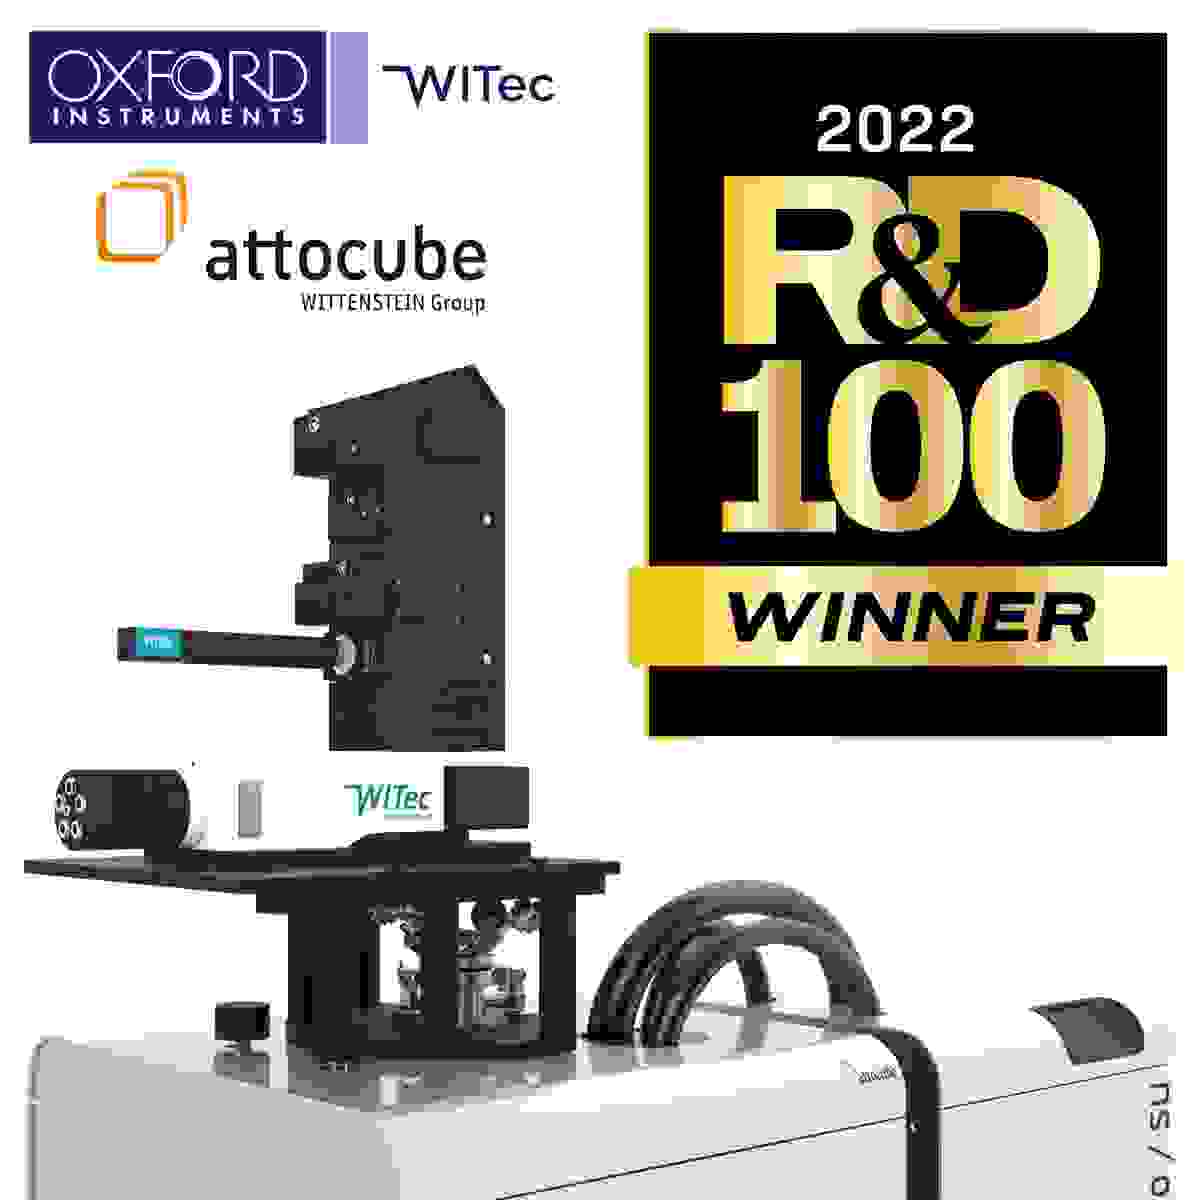 cryoRaman: R&D 100 Award winner